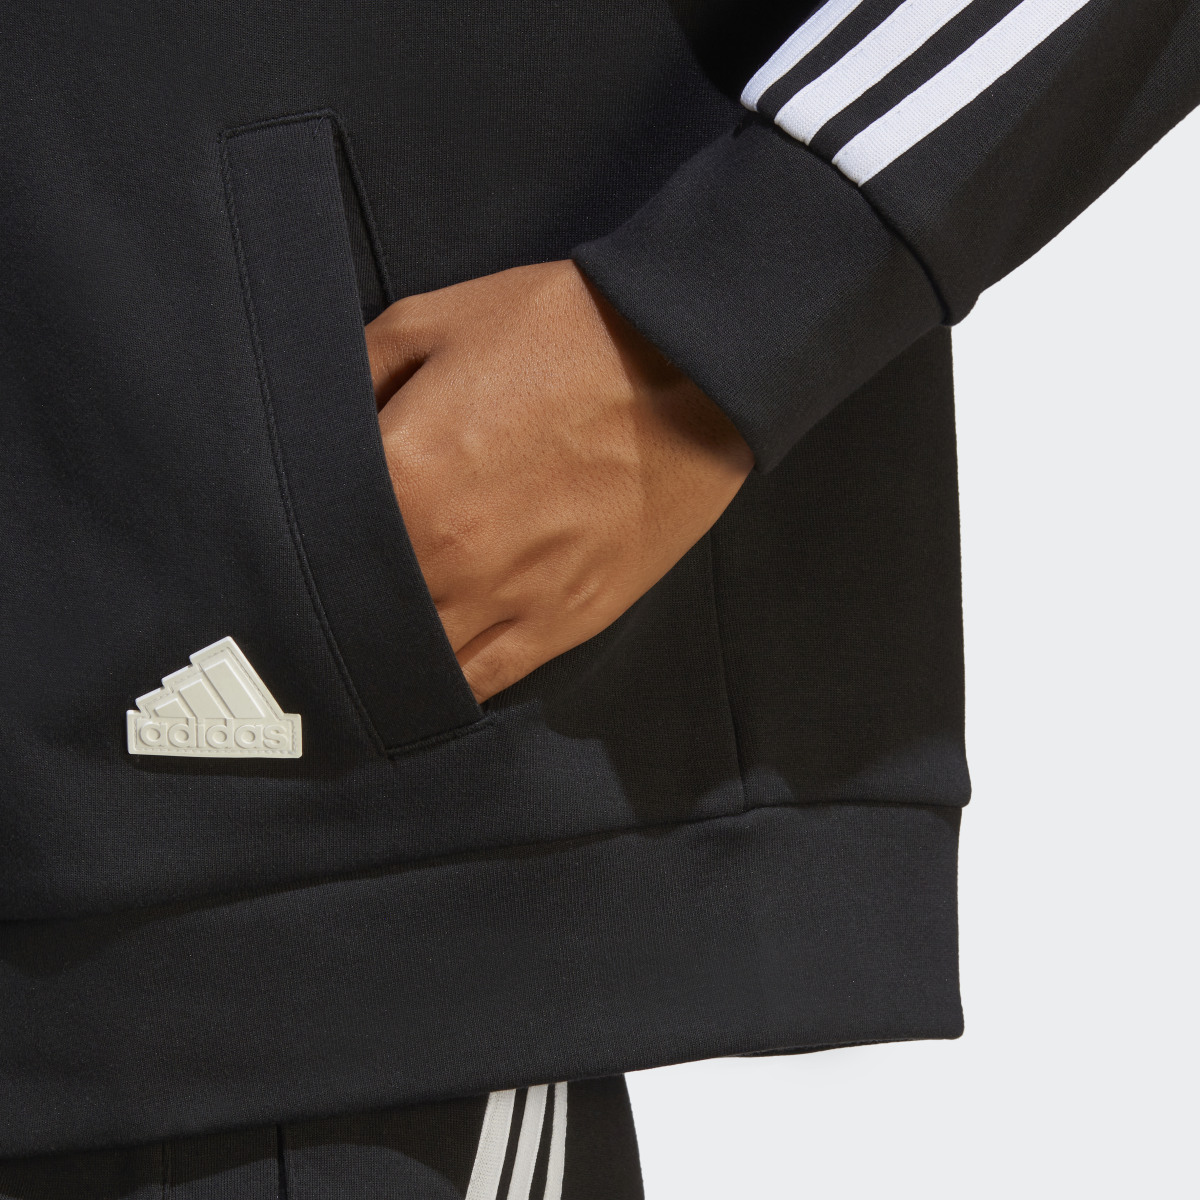 Adidas Future Icons 3-Stripes Full-Zip Kapüşonlu Üst. 8